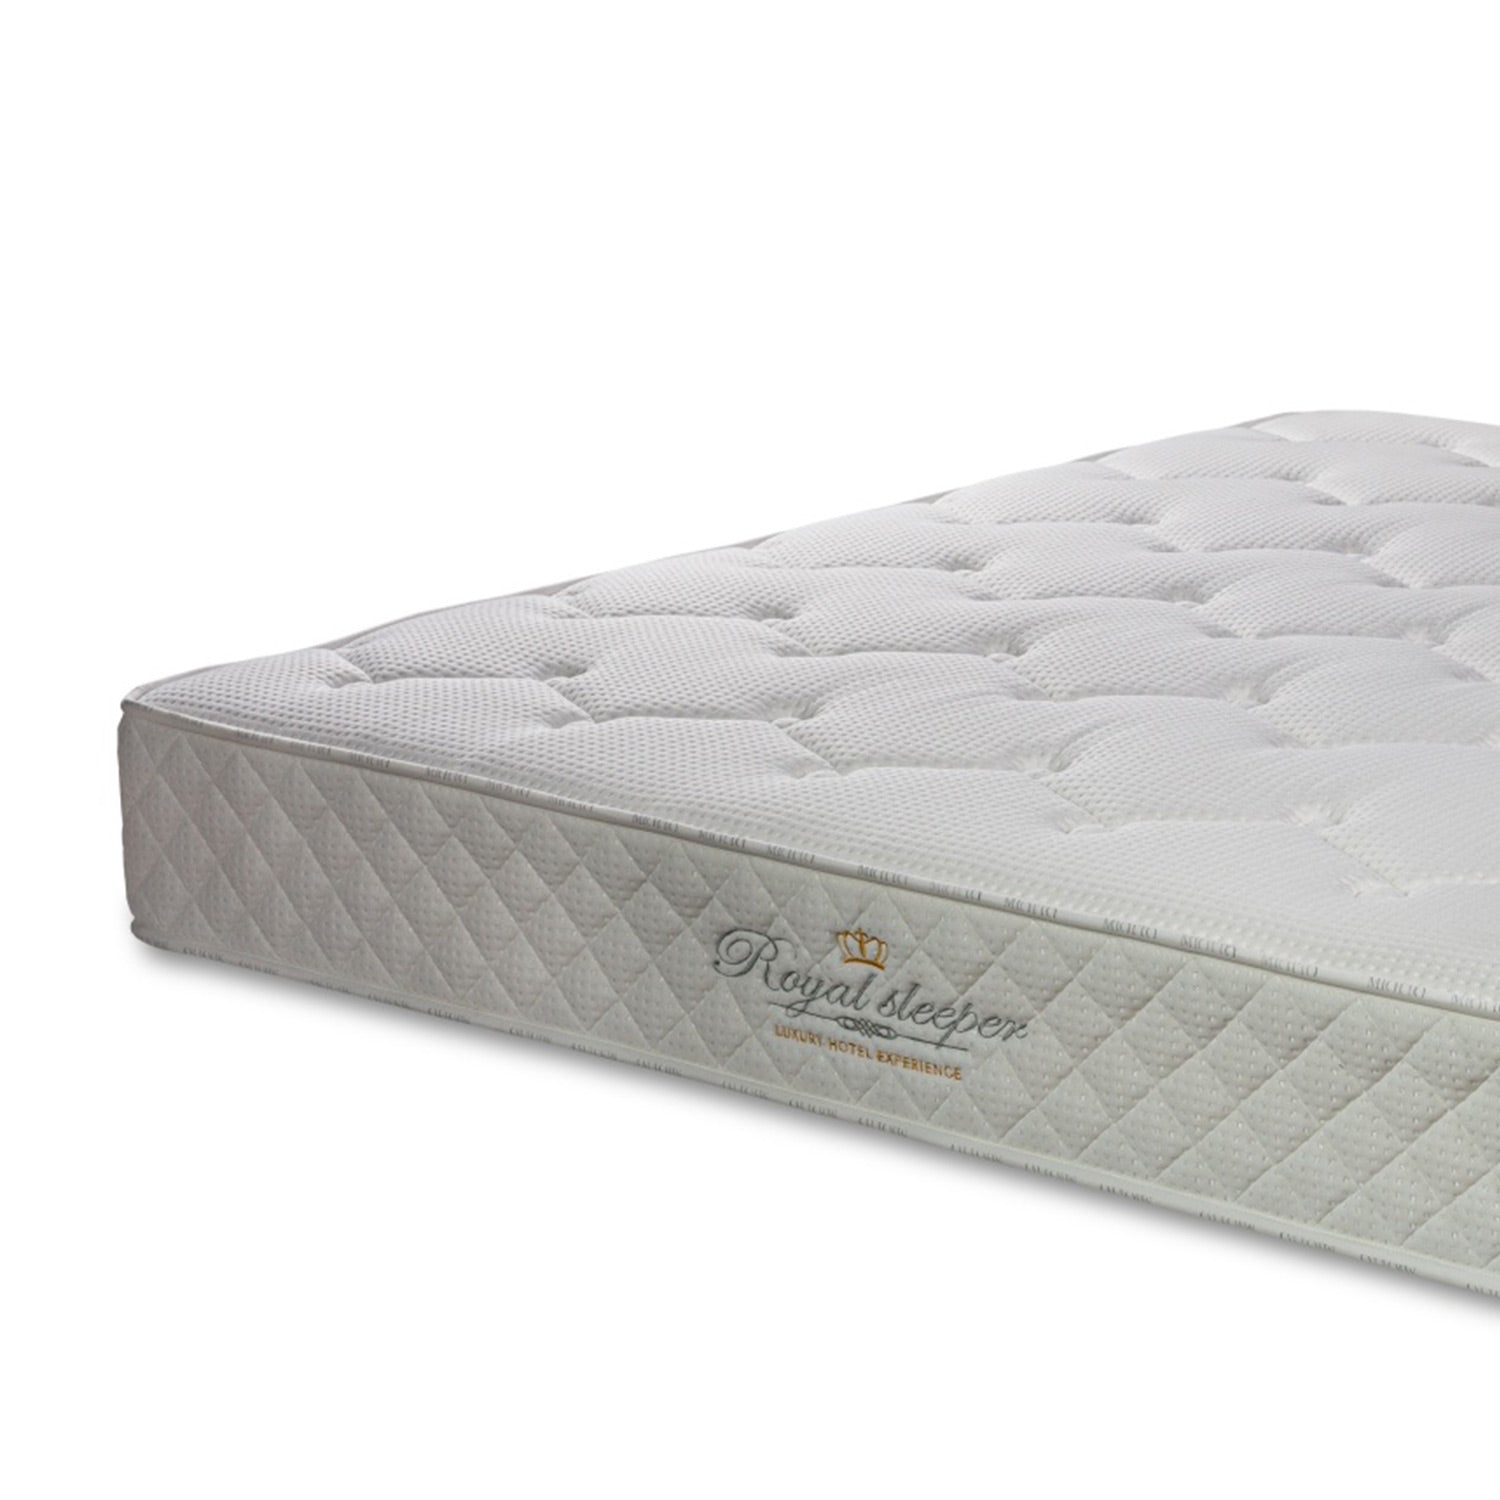 Surrey mattress